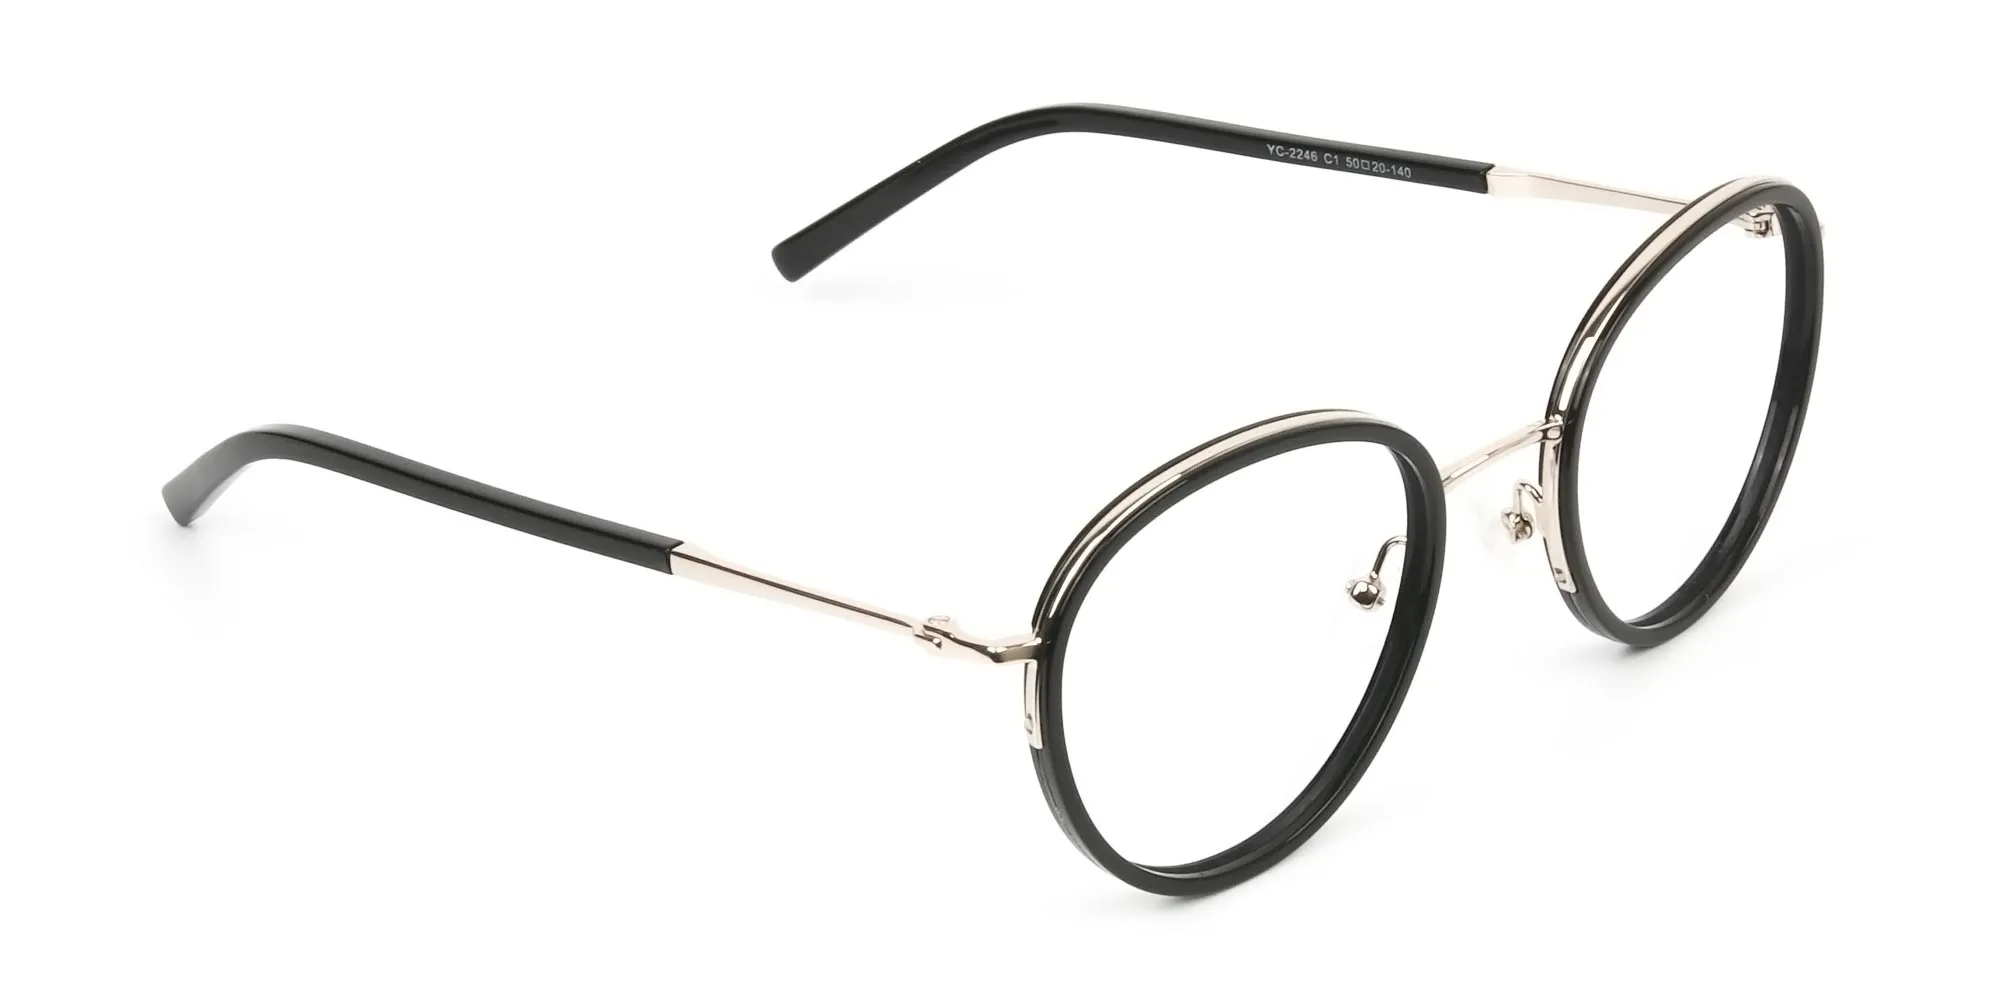 Retro Black & Silver Circular Glasses - 2